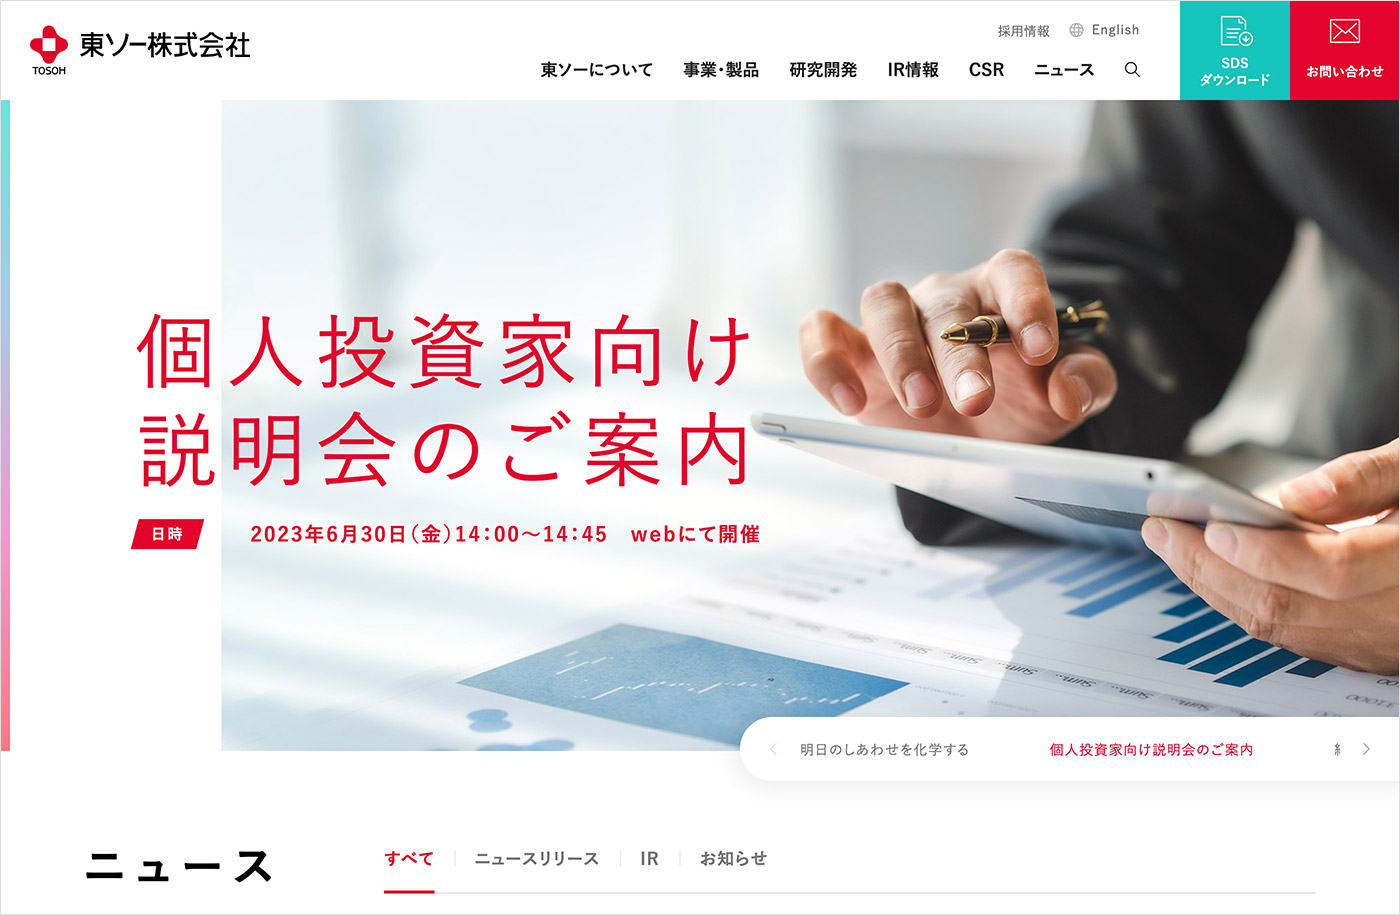 東ソー株式会社ウェブサイトの画面キャプチャ画像